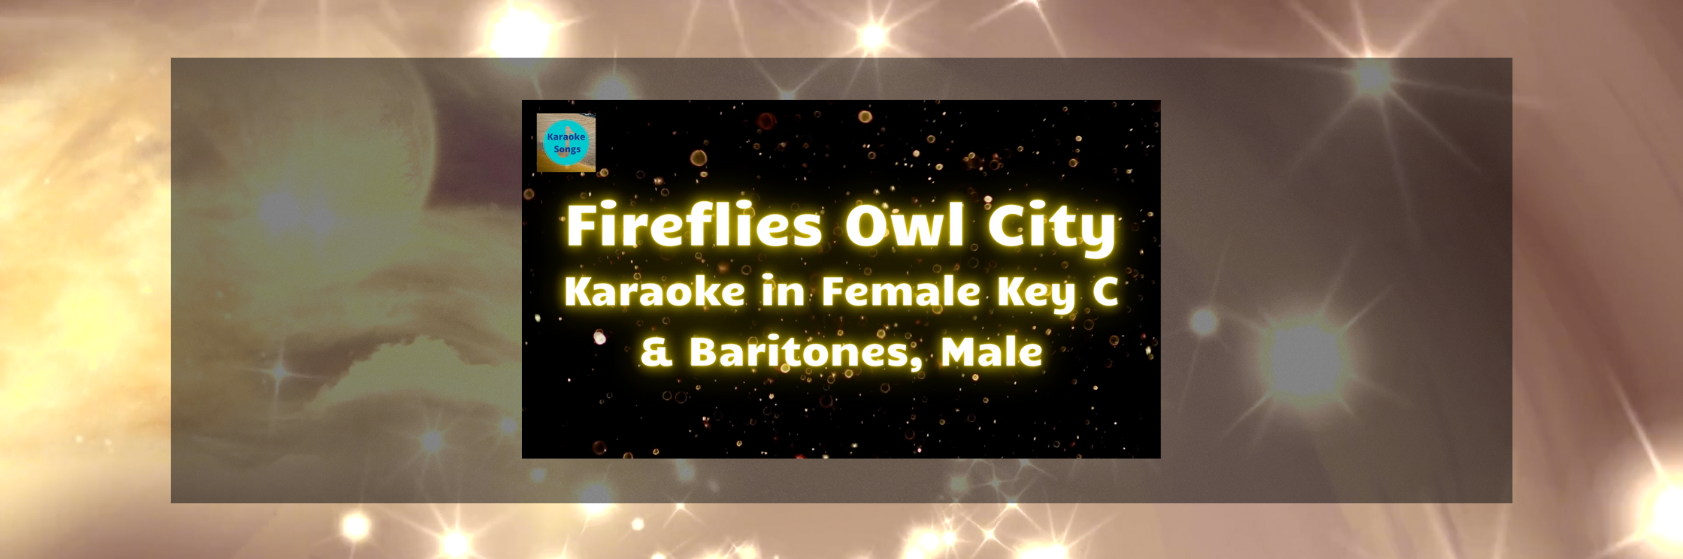 Fireflies Owl City Karaoke in Female Key C and Baritone, Male